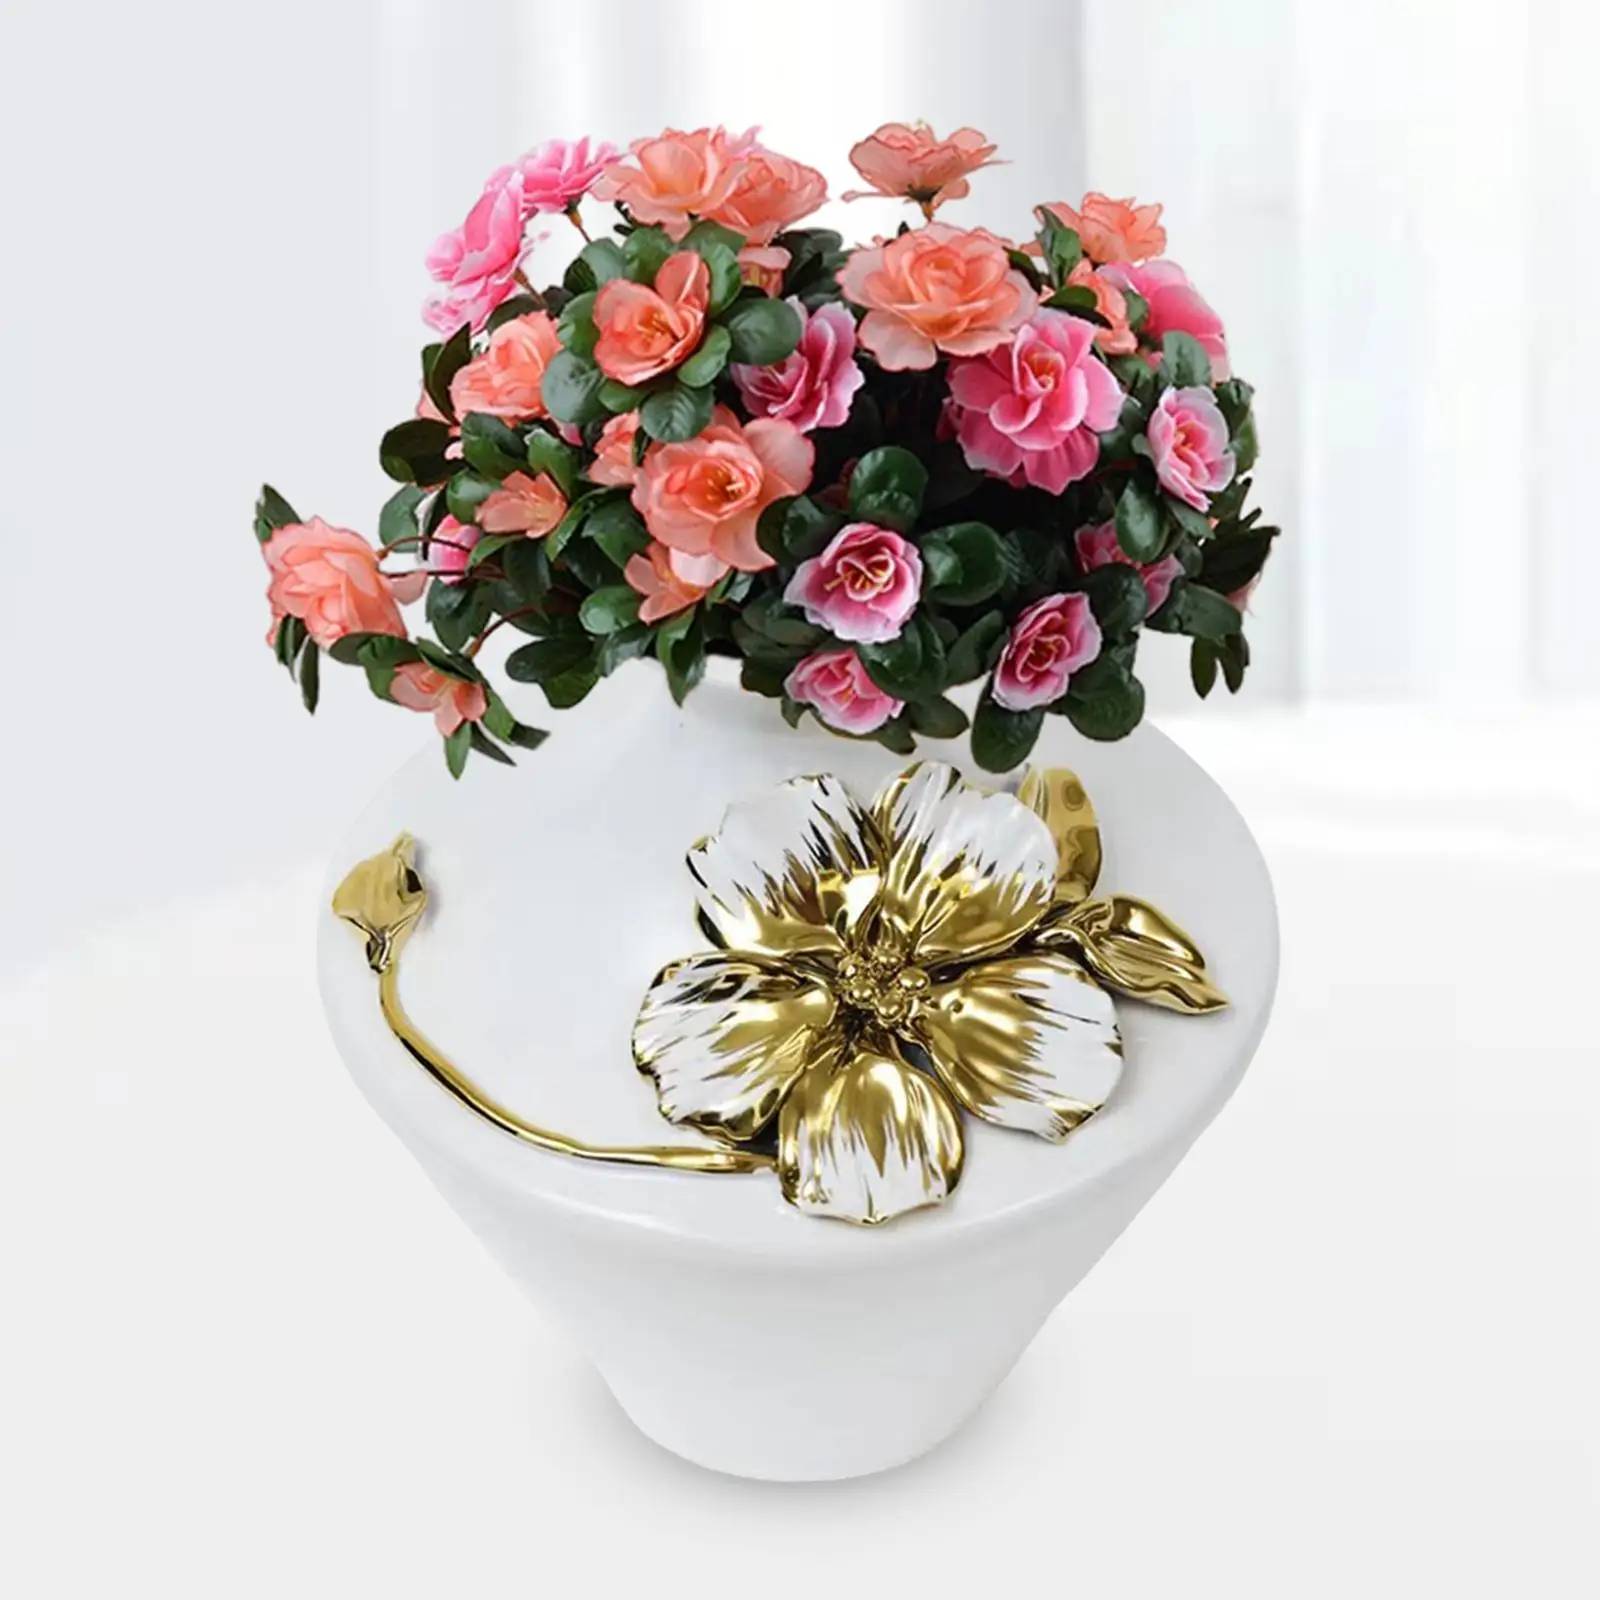 Porcelain Storage Jar Vase Flower Vase Minimalist Decorative Vase for Shelf Room